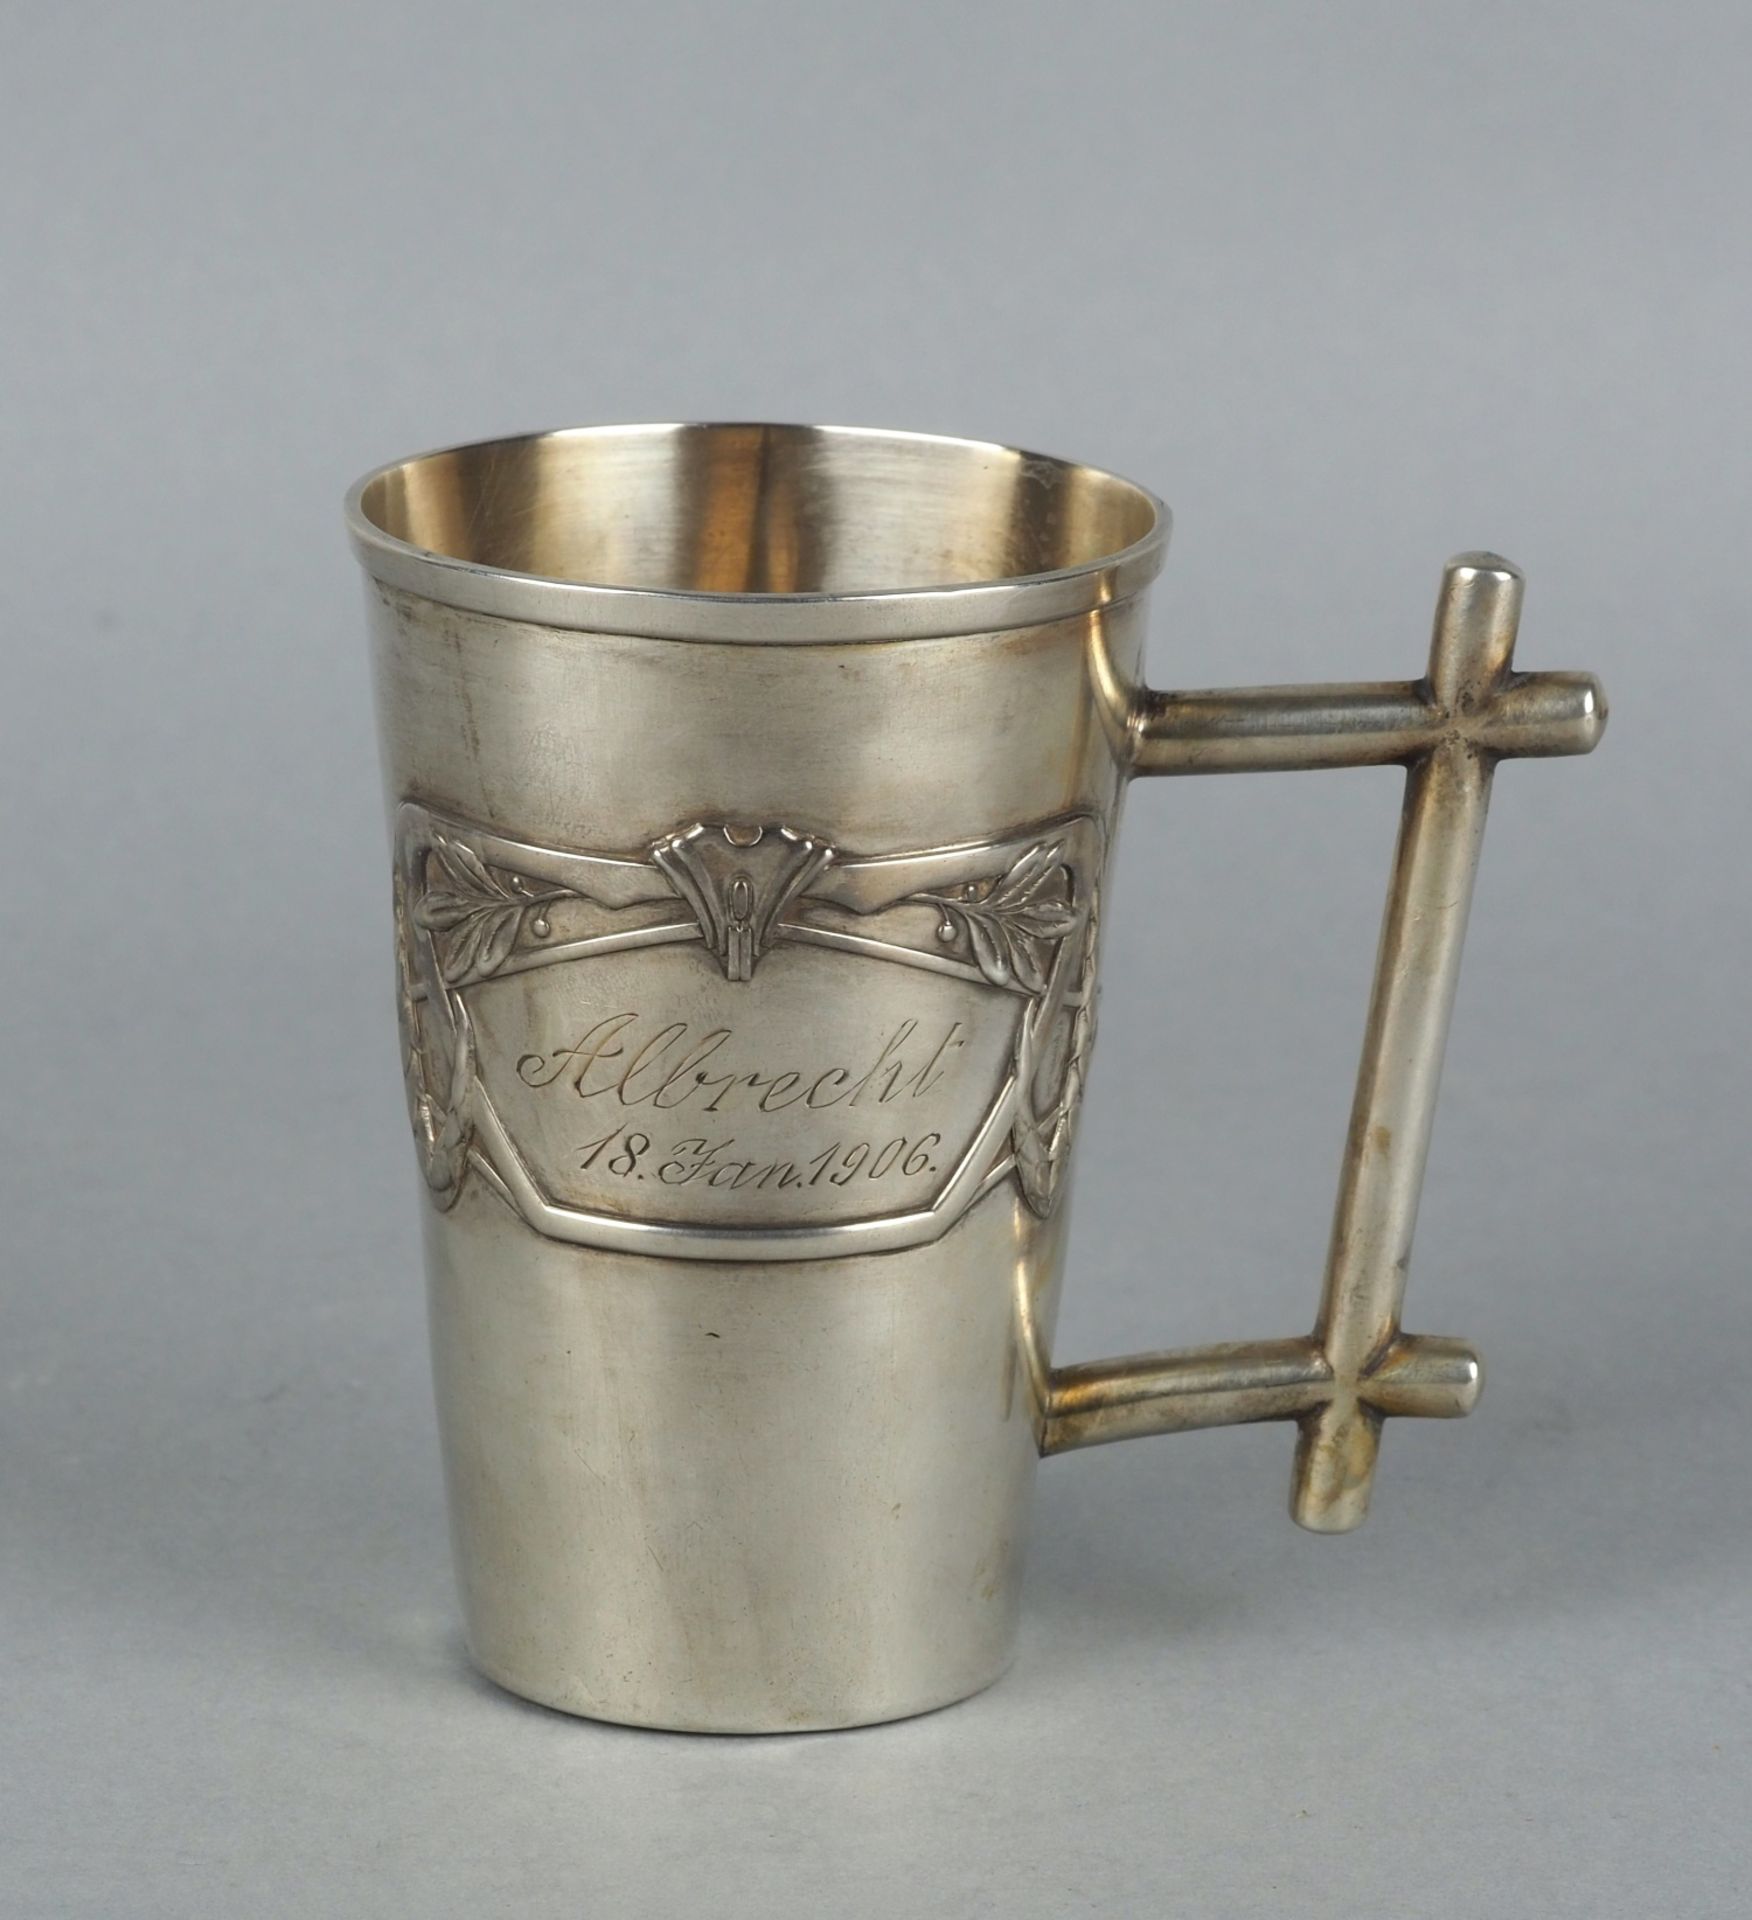 Art nouveau silver cup, Vereinigte Silberwarenfabriken, around 1906